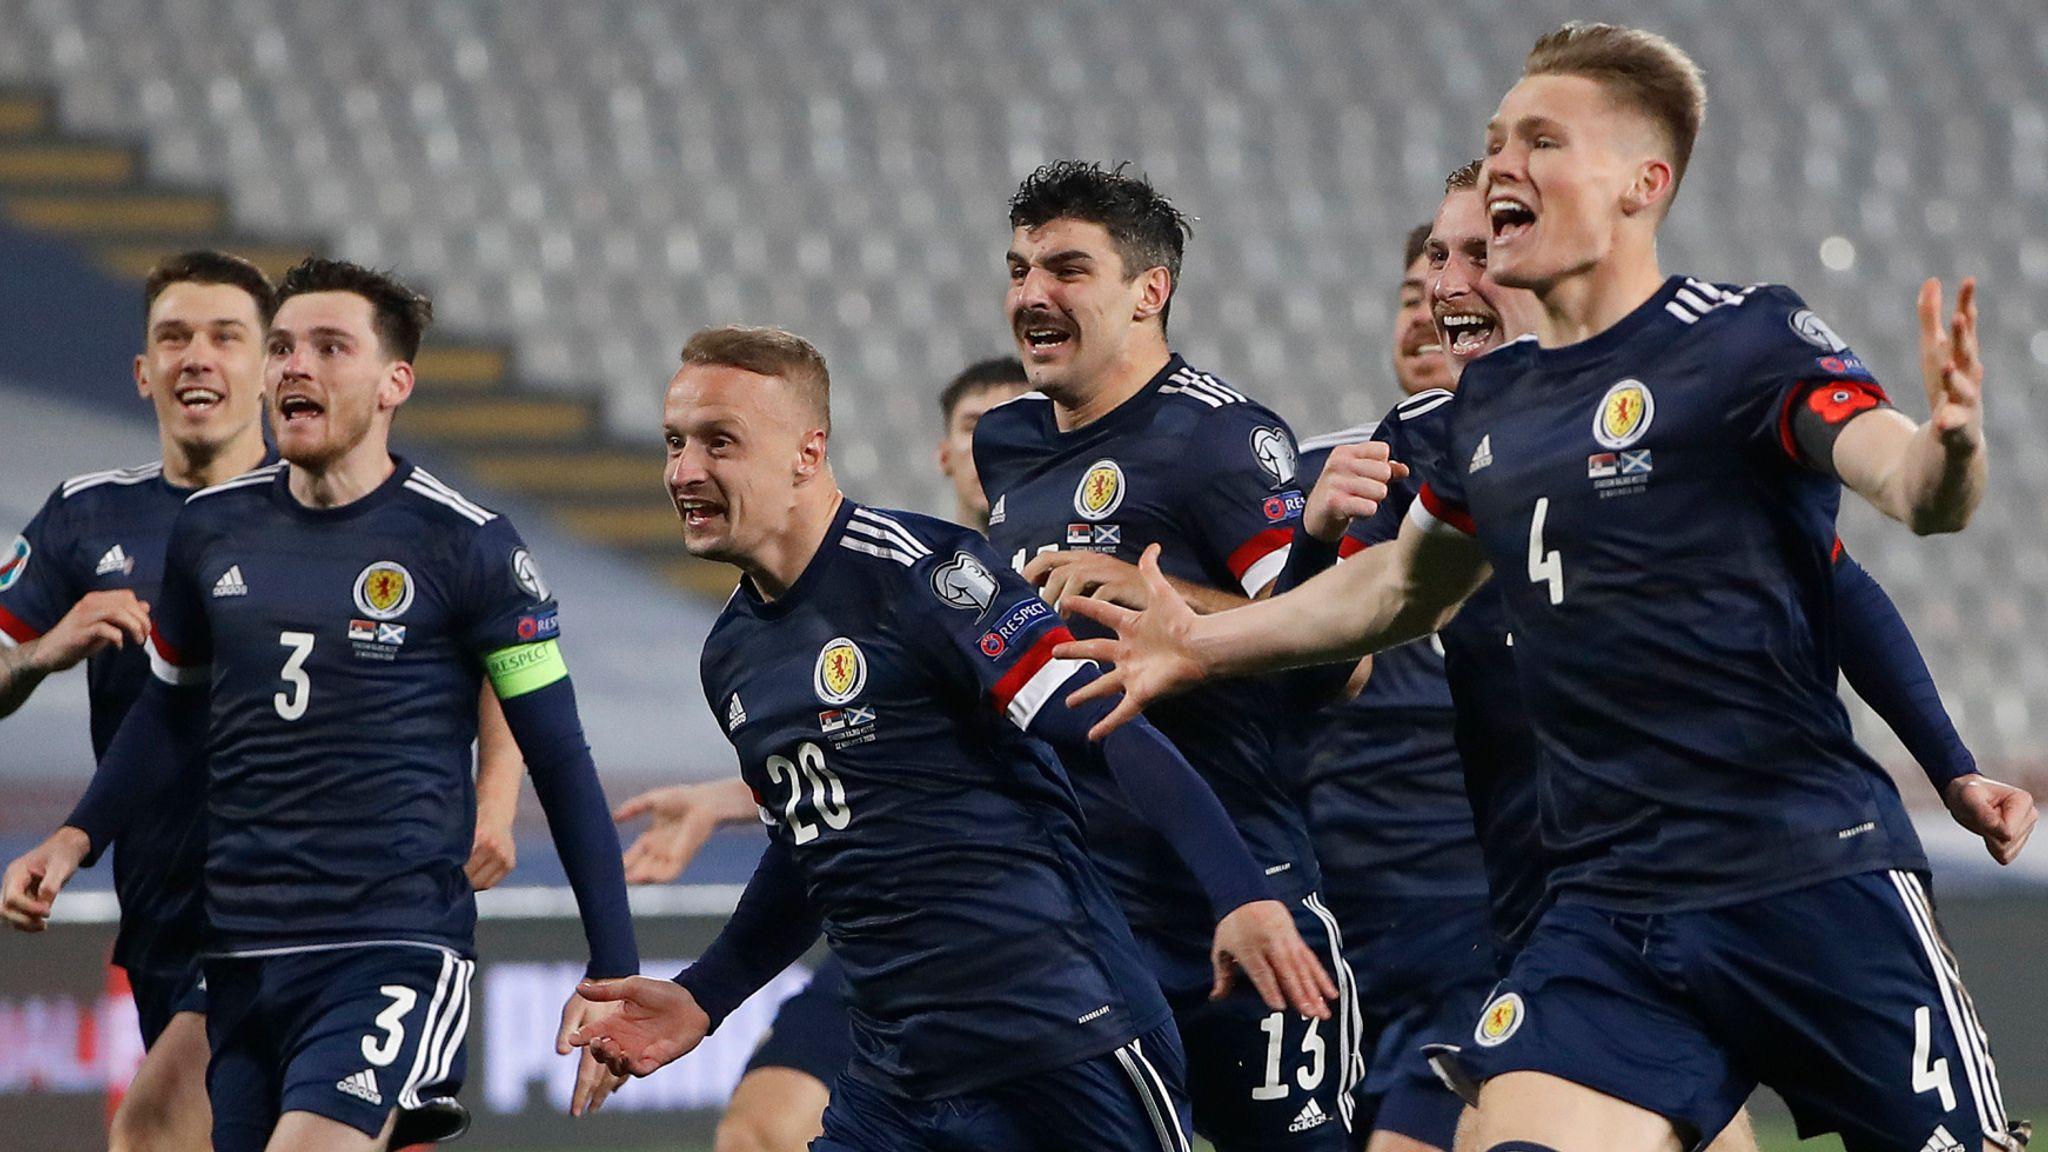 Niềm vui của các cầu thủ Scotland khi được tham dự EURO 2020 (Ảnh: Internet)